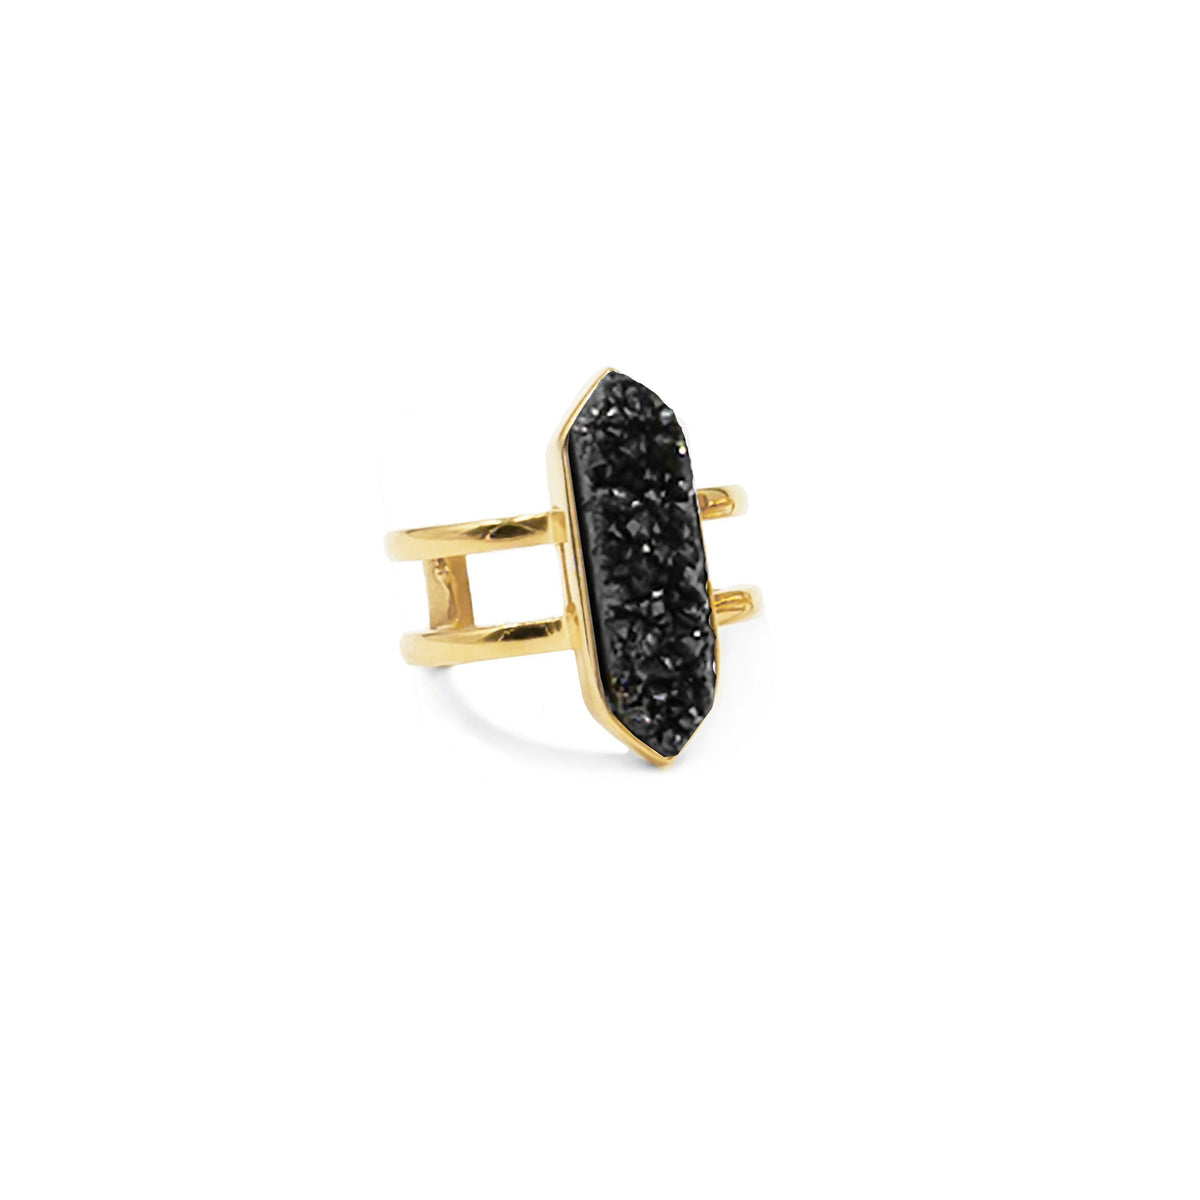 Colección Bangle - Parvus Raven Quartz Ring joyería fina de diseño para hombres y mujeres